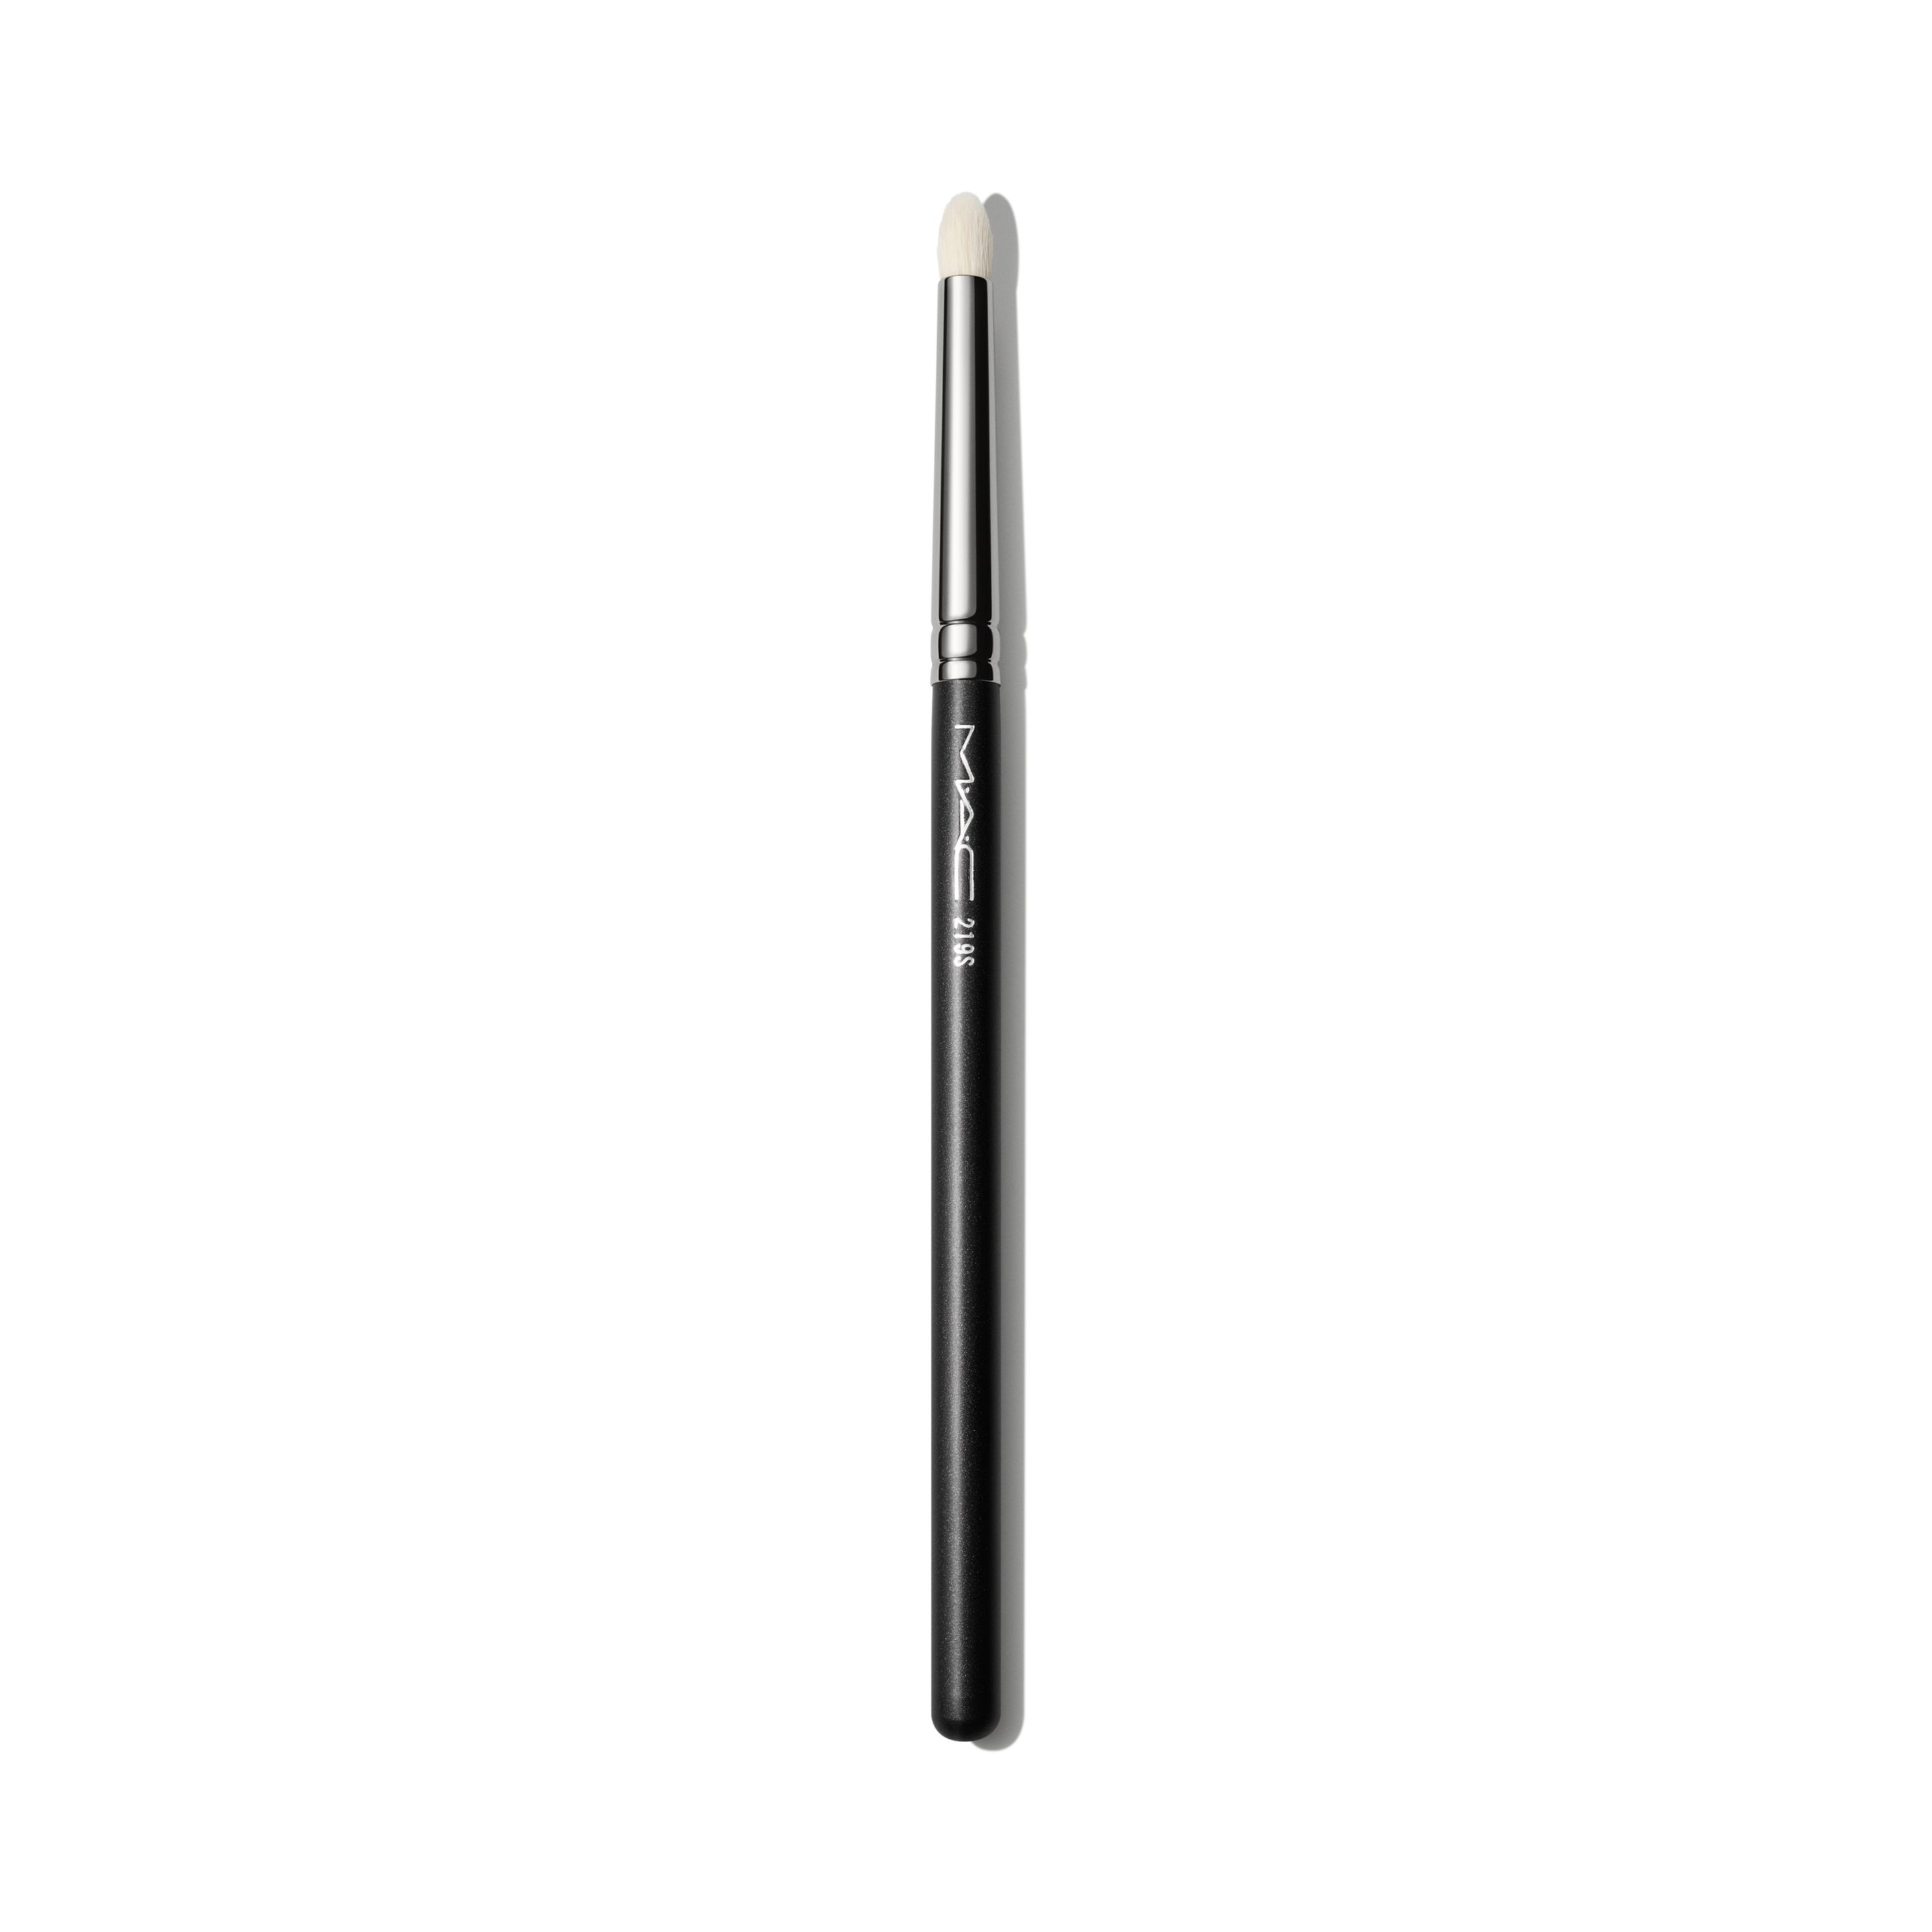 Кисть для теней MAC Cosmetics Pencil Brush №219S черная golden rose скошенная кисть для теней angled eyeshadow brush 10